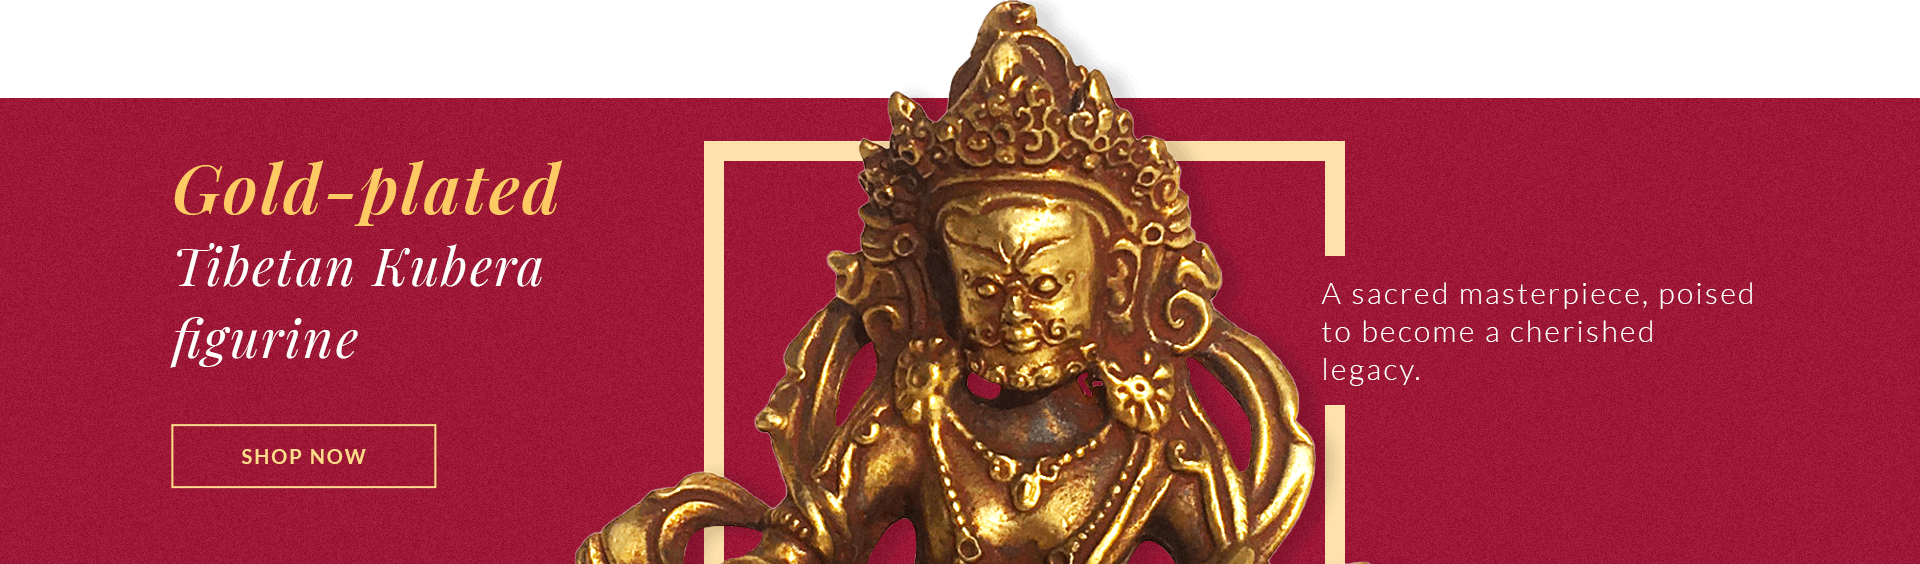 Gold Plated Kubera Figurine Banner